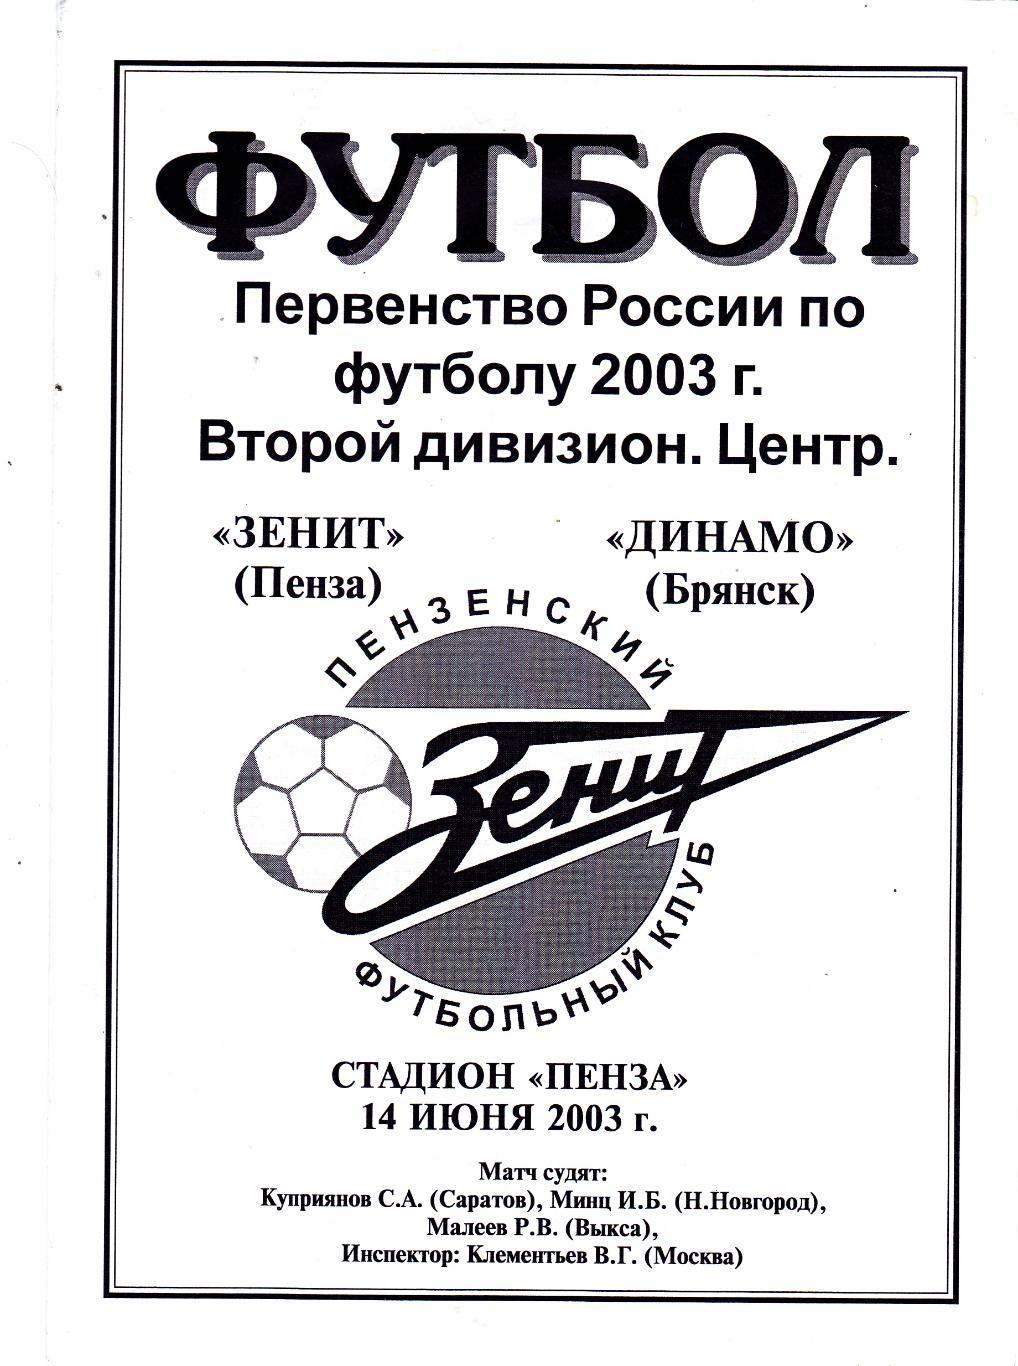 Зенит (Пенза) - Динамо (Брянск) 14.06.2003